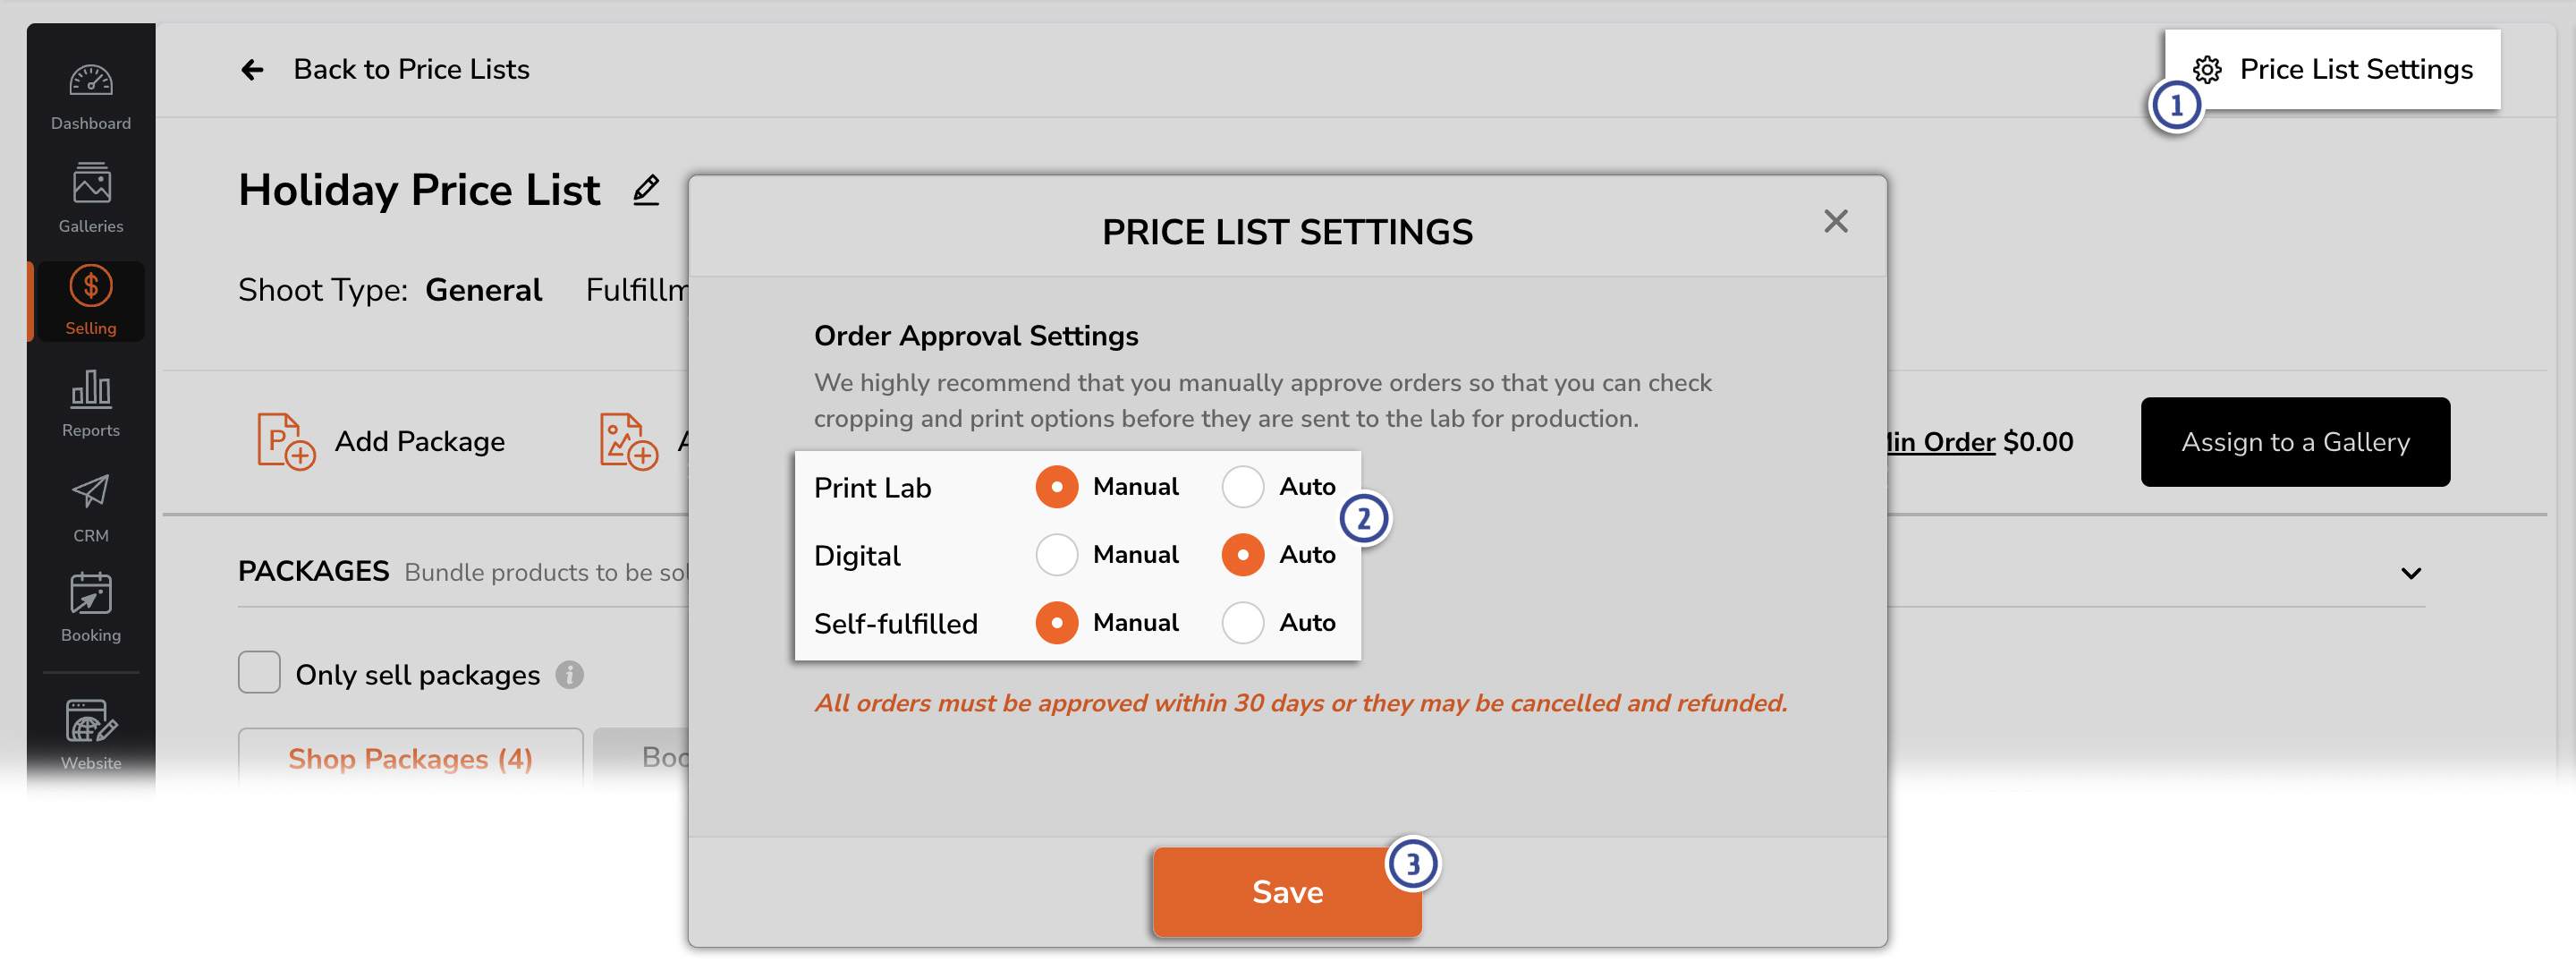 price_list_settings.jpg